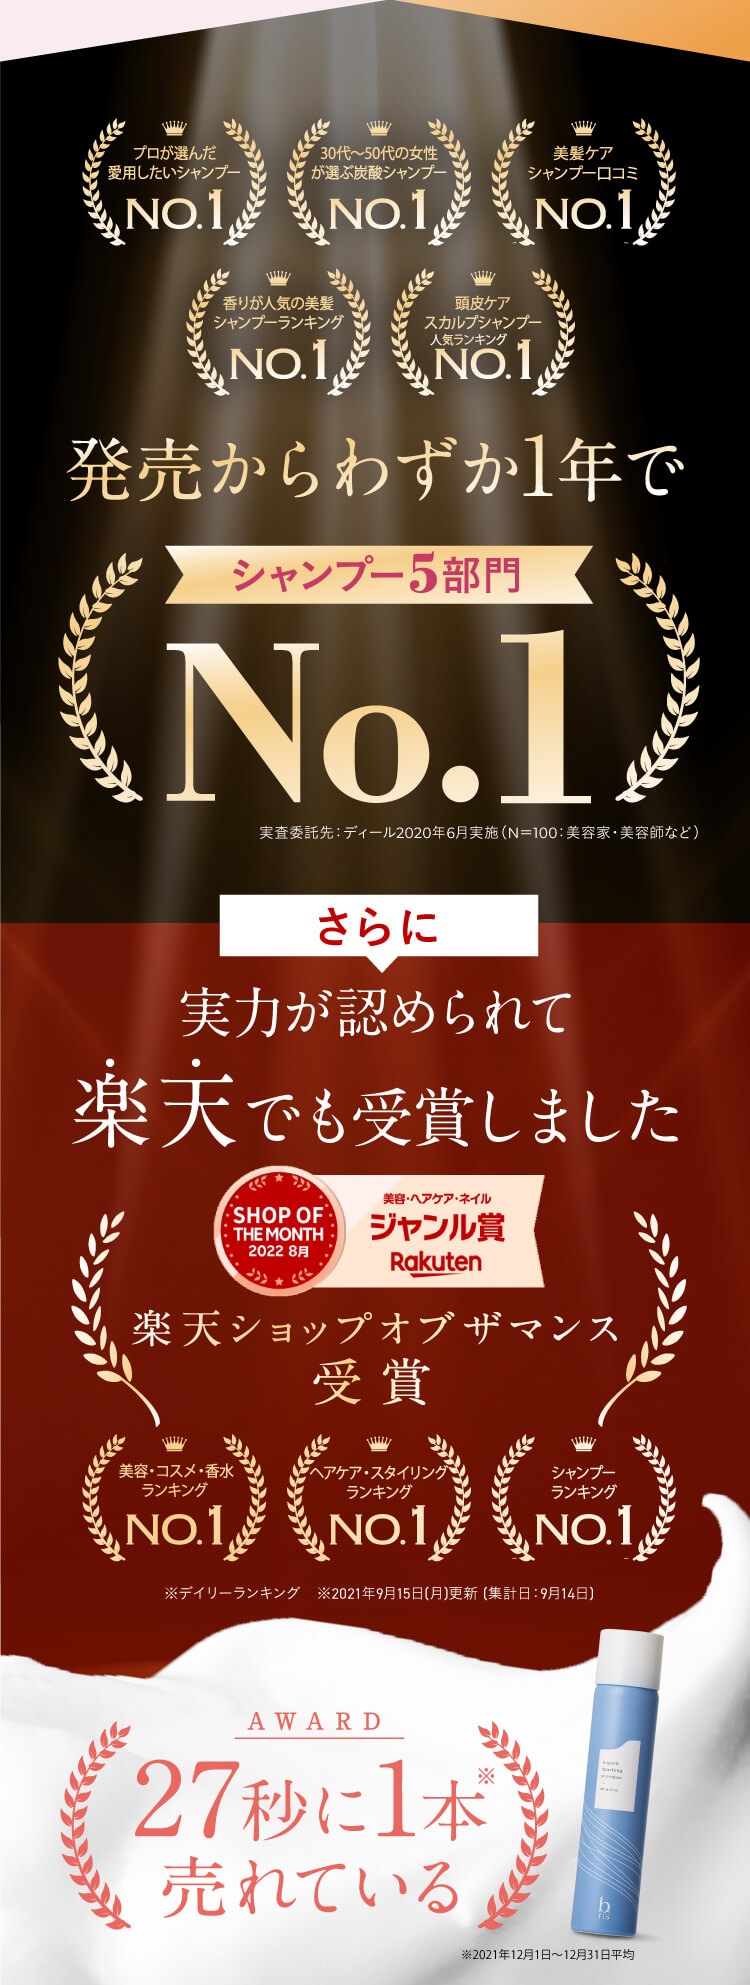 シャンプー5部門 No.1